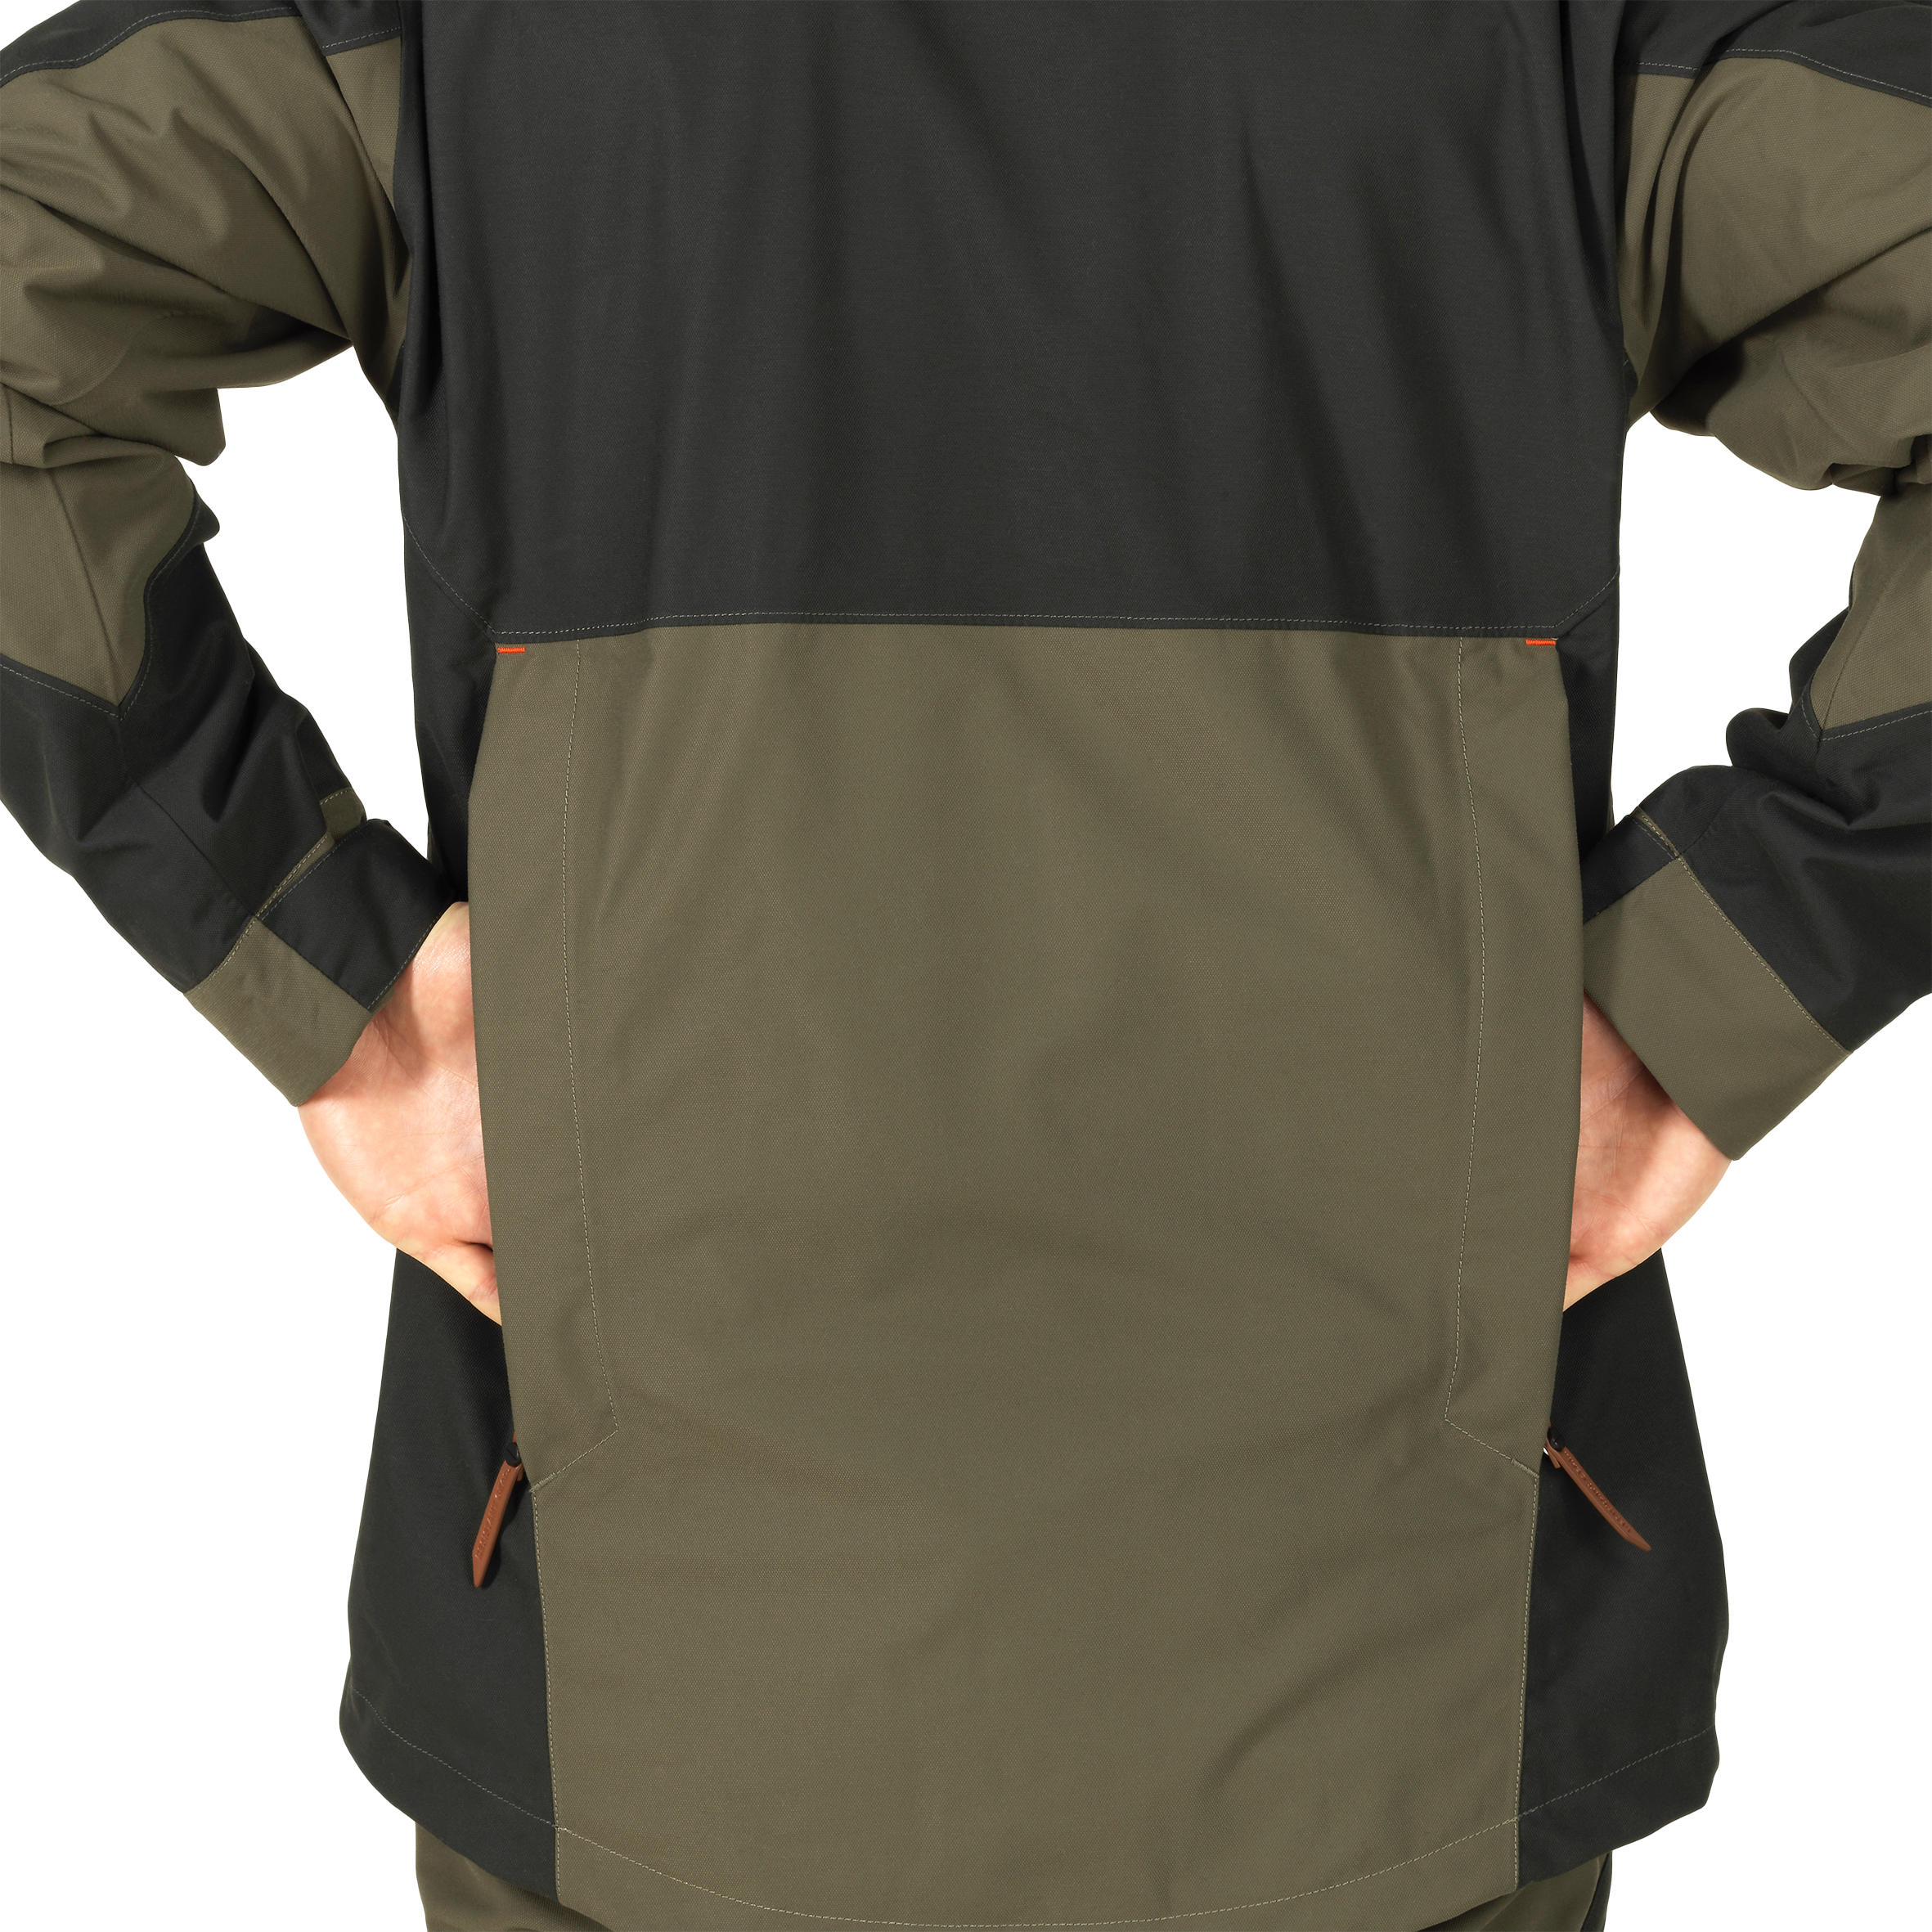 Reinforced Waterproof Jacket - Brown 11/21